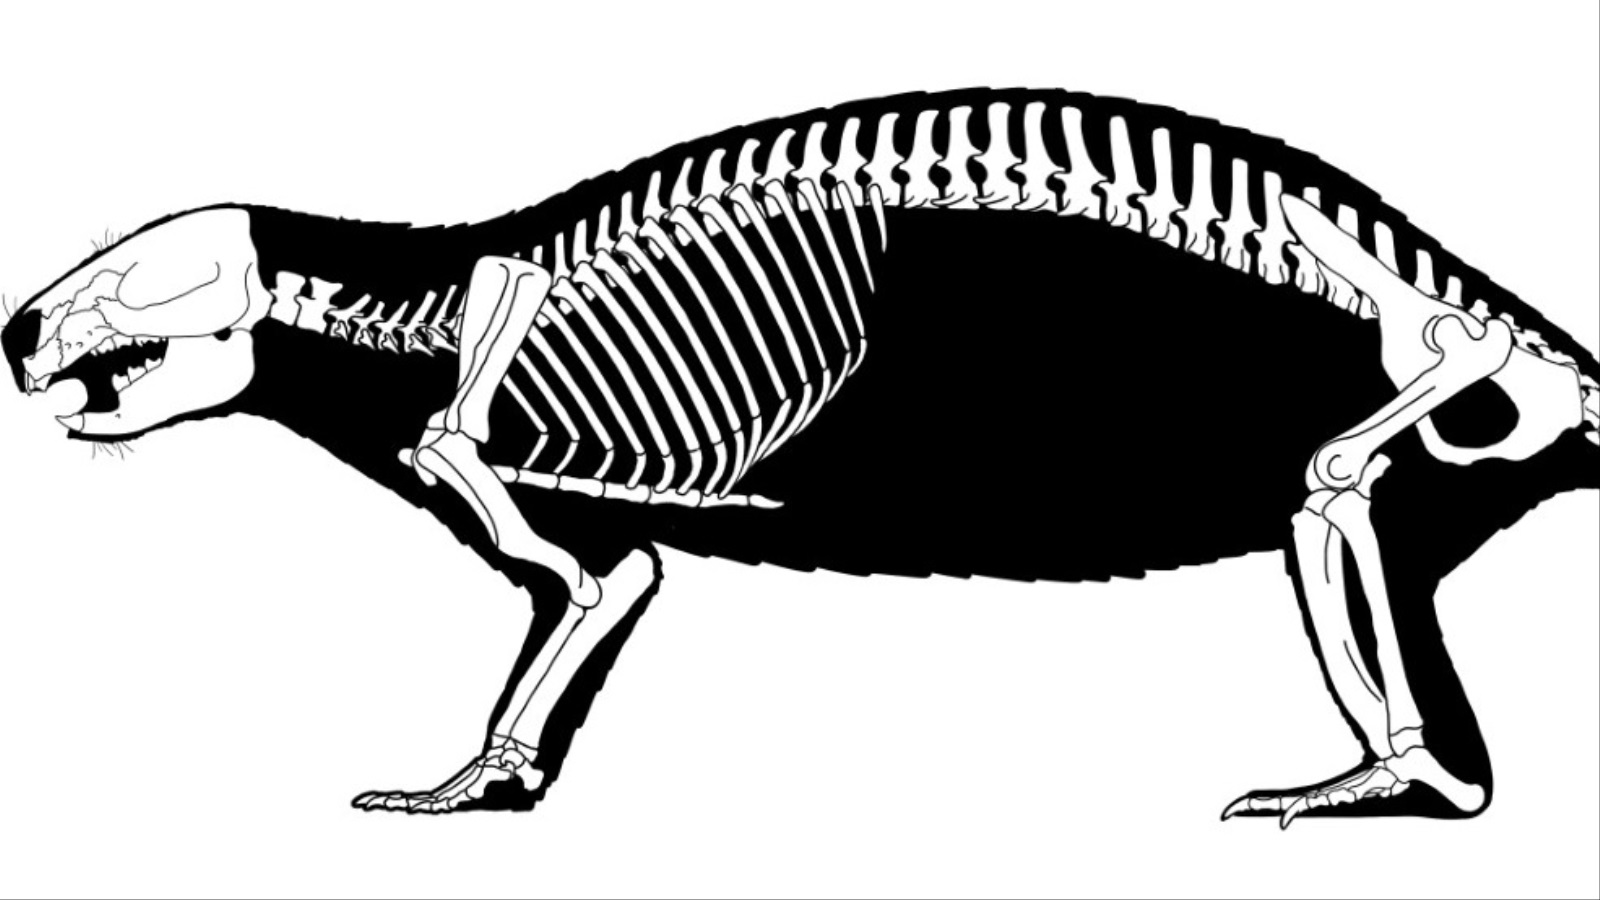 ‪صورة حاسوبية لحيوان آدالاثيريوم هوي الذي عثر عليه في مدغشقر (الجزيرة)‬ صورة حاسوبية لحيوان آدالاثيريوم هوي الذي عثر عليه في مدغشقر (الجزيرة) 